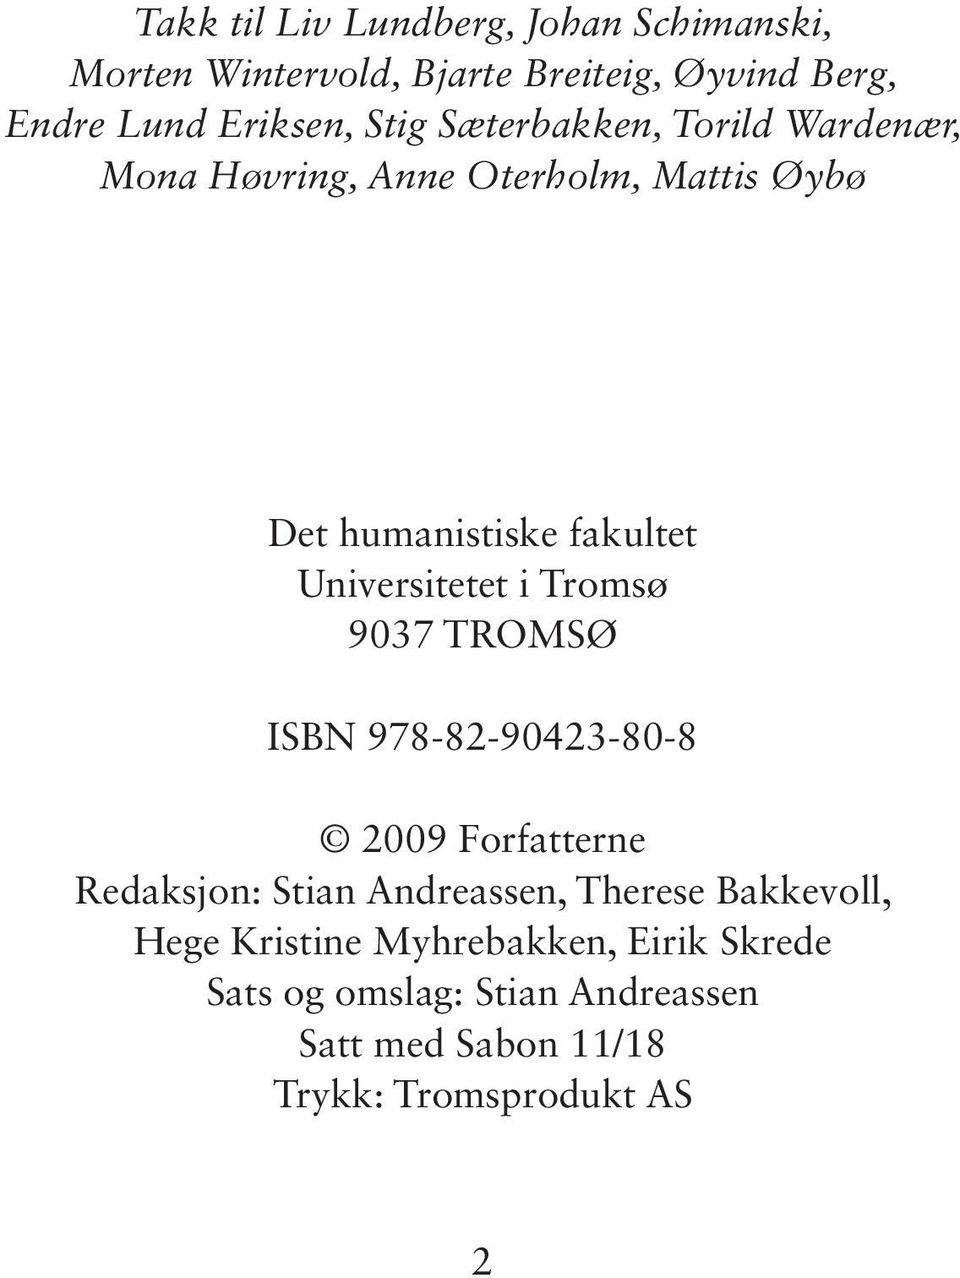 Universitetet i Tromsø 9037 TROMSØ ISBN 978-82-90423-80-8 2009 Forfatterne Redaksjon: Stian Andreassen, Therese